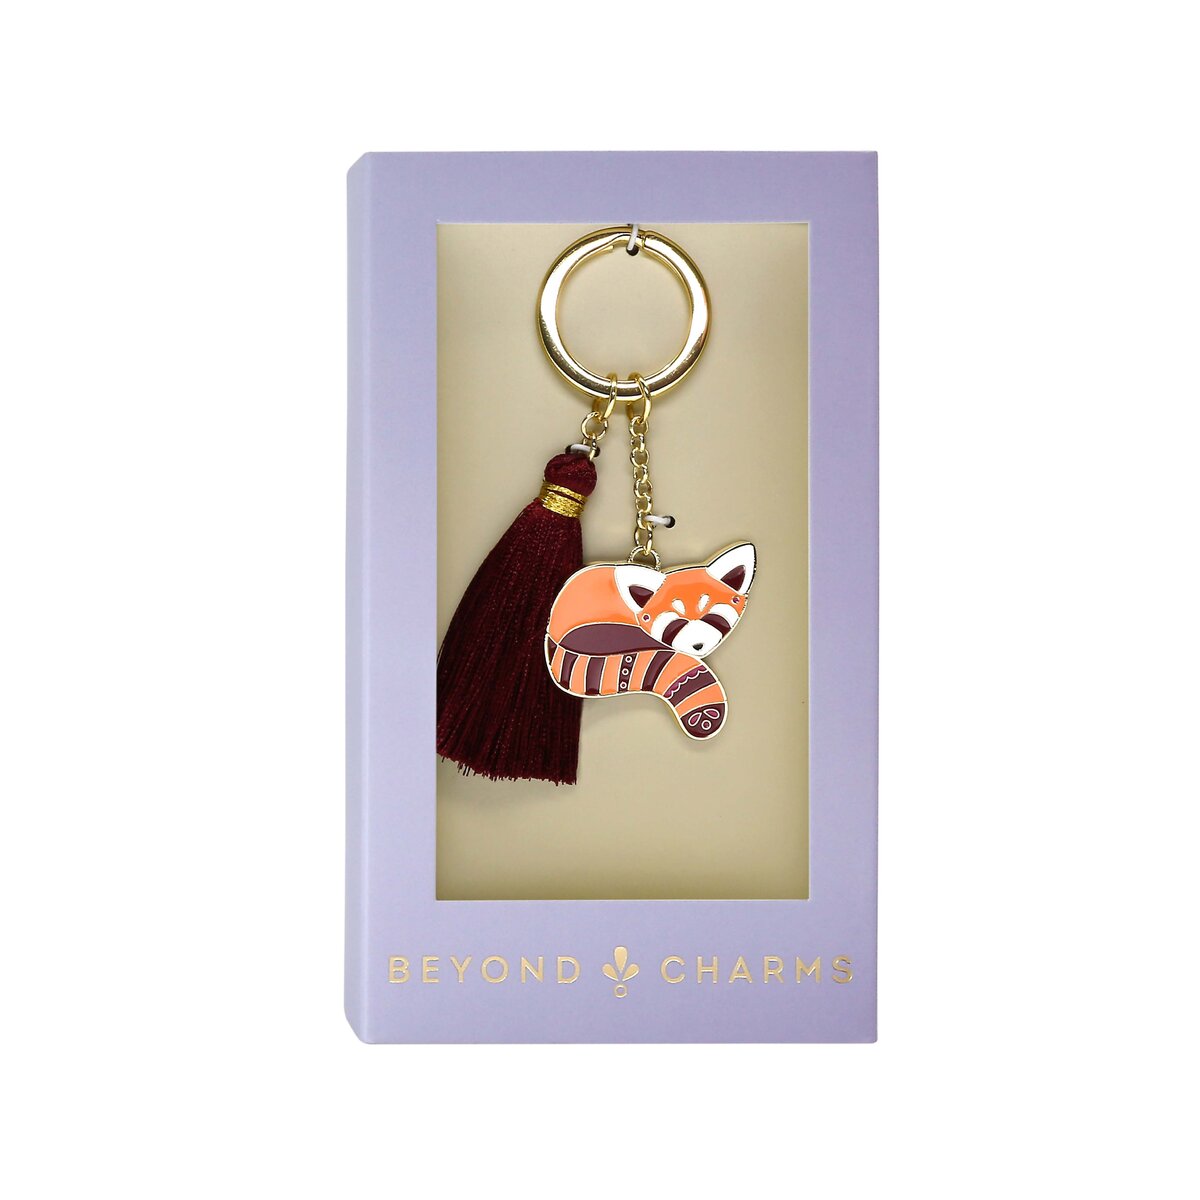 red panda keychain